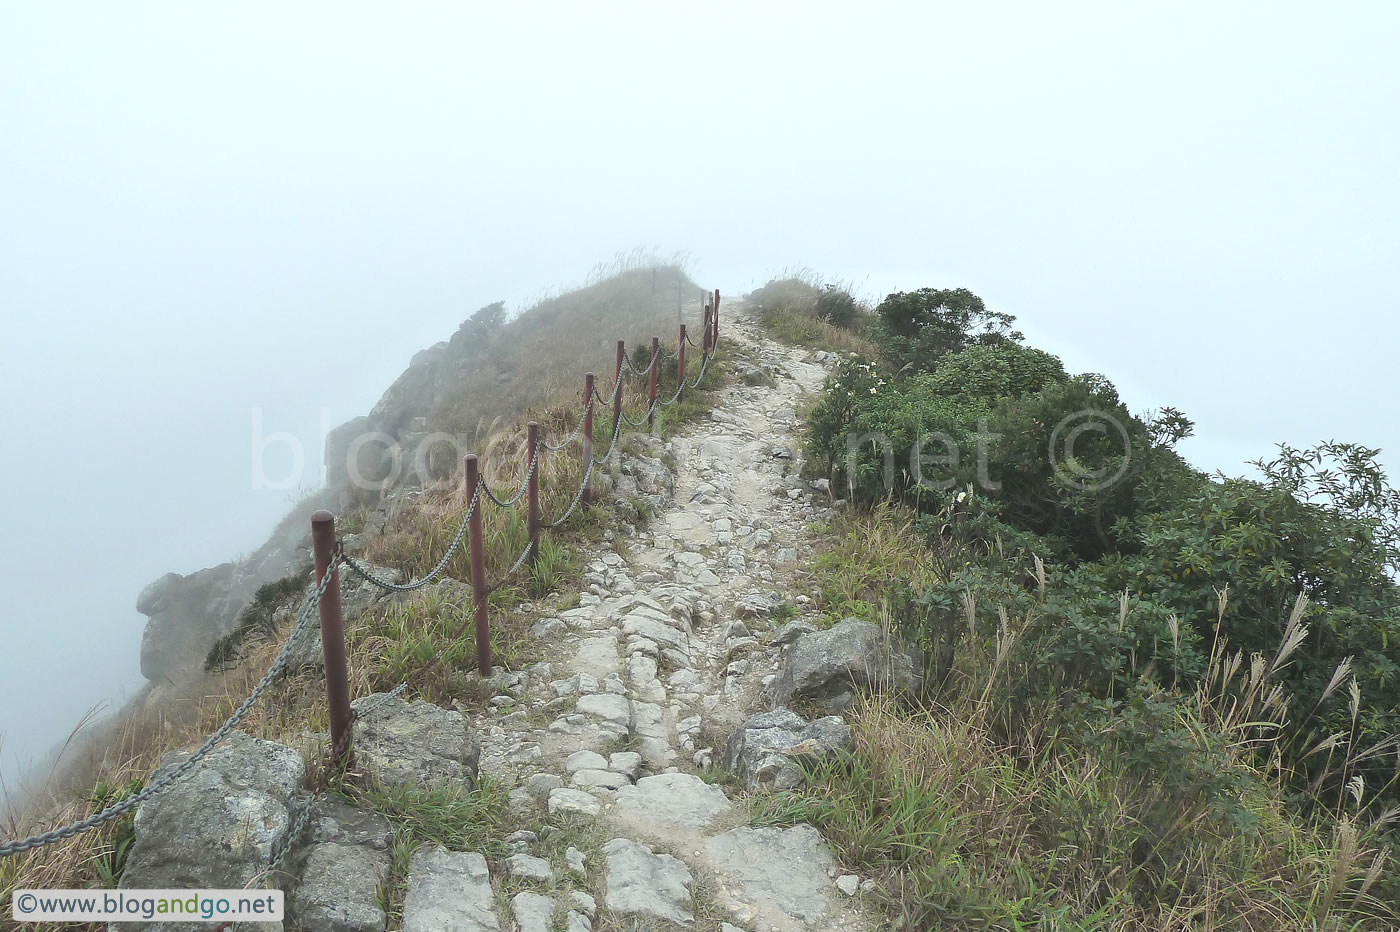 Lantau Trail - On to Ngong Ping